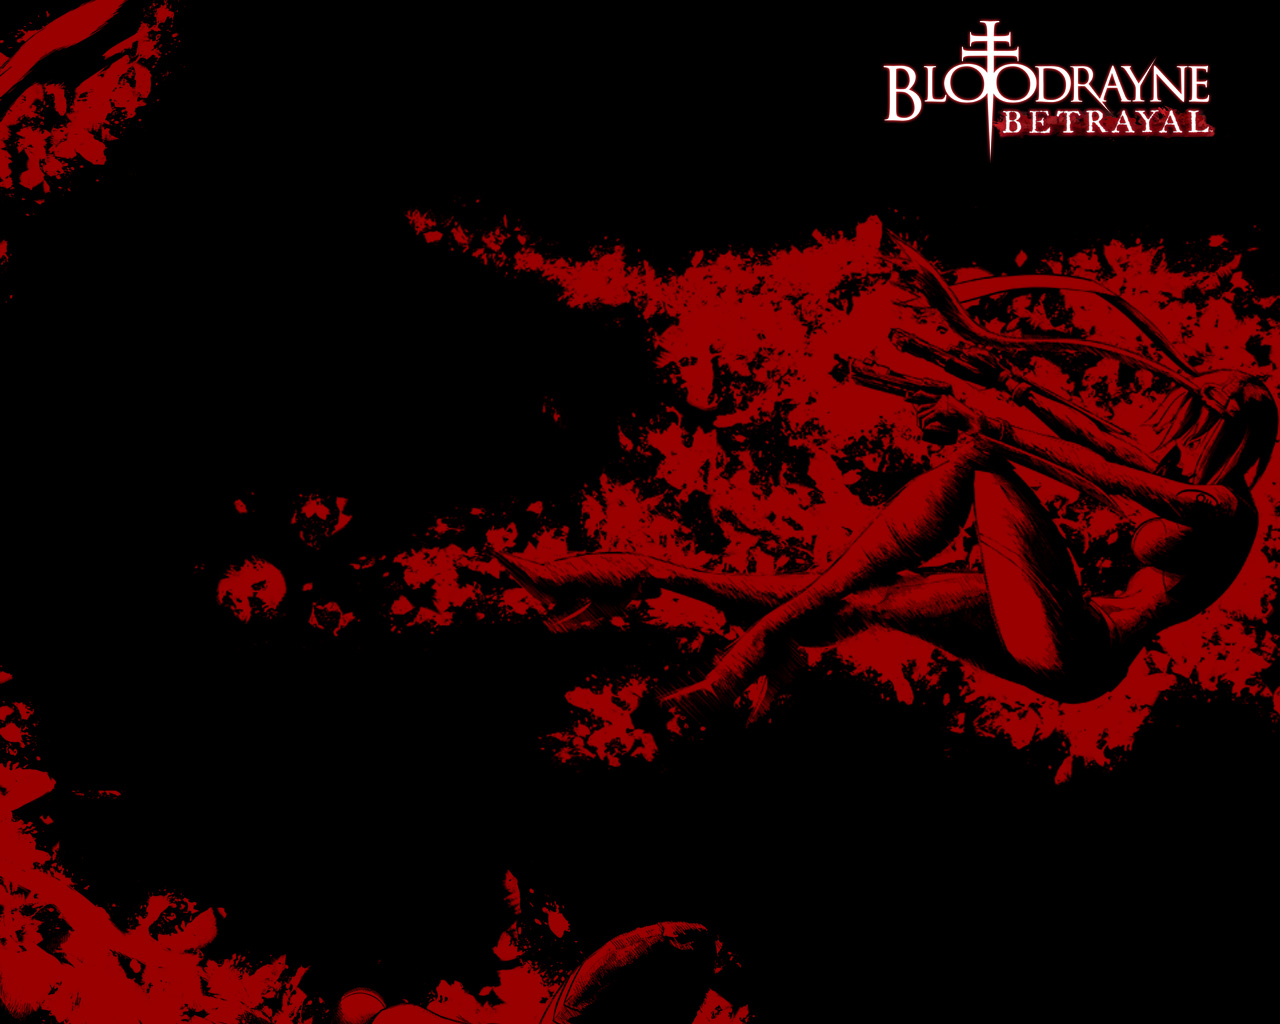 Descargar fondos de escritorio de Bloodrayne: Betrayal HD